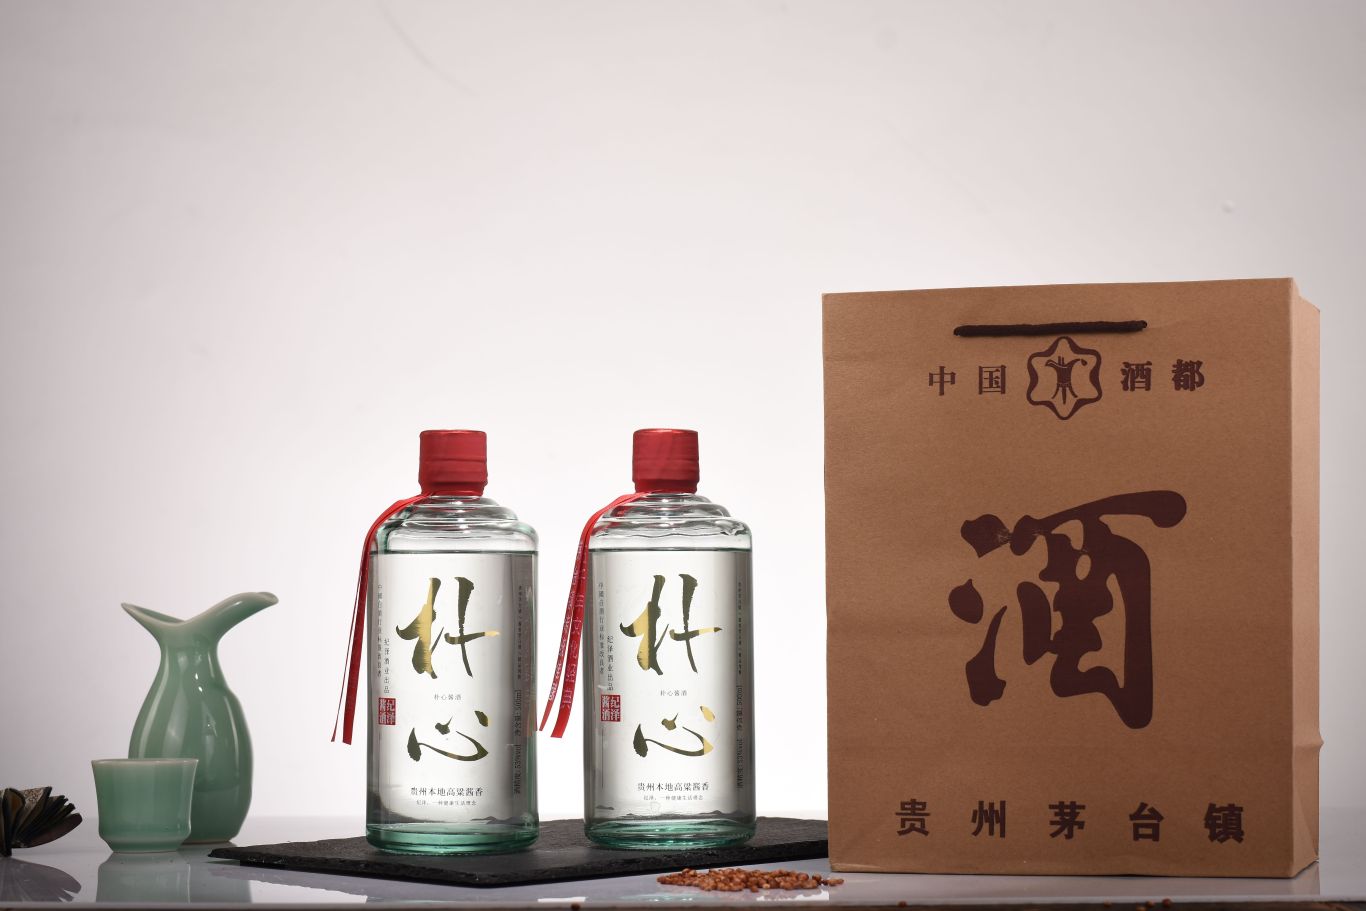 紀澤系列醬香酒包裝設計圖6